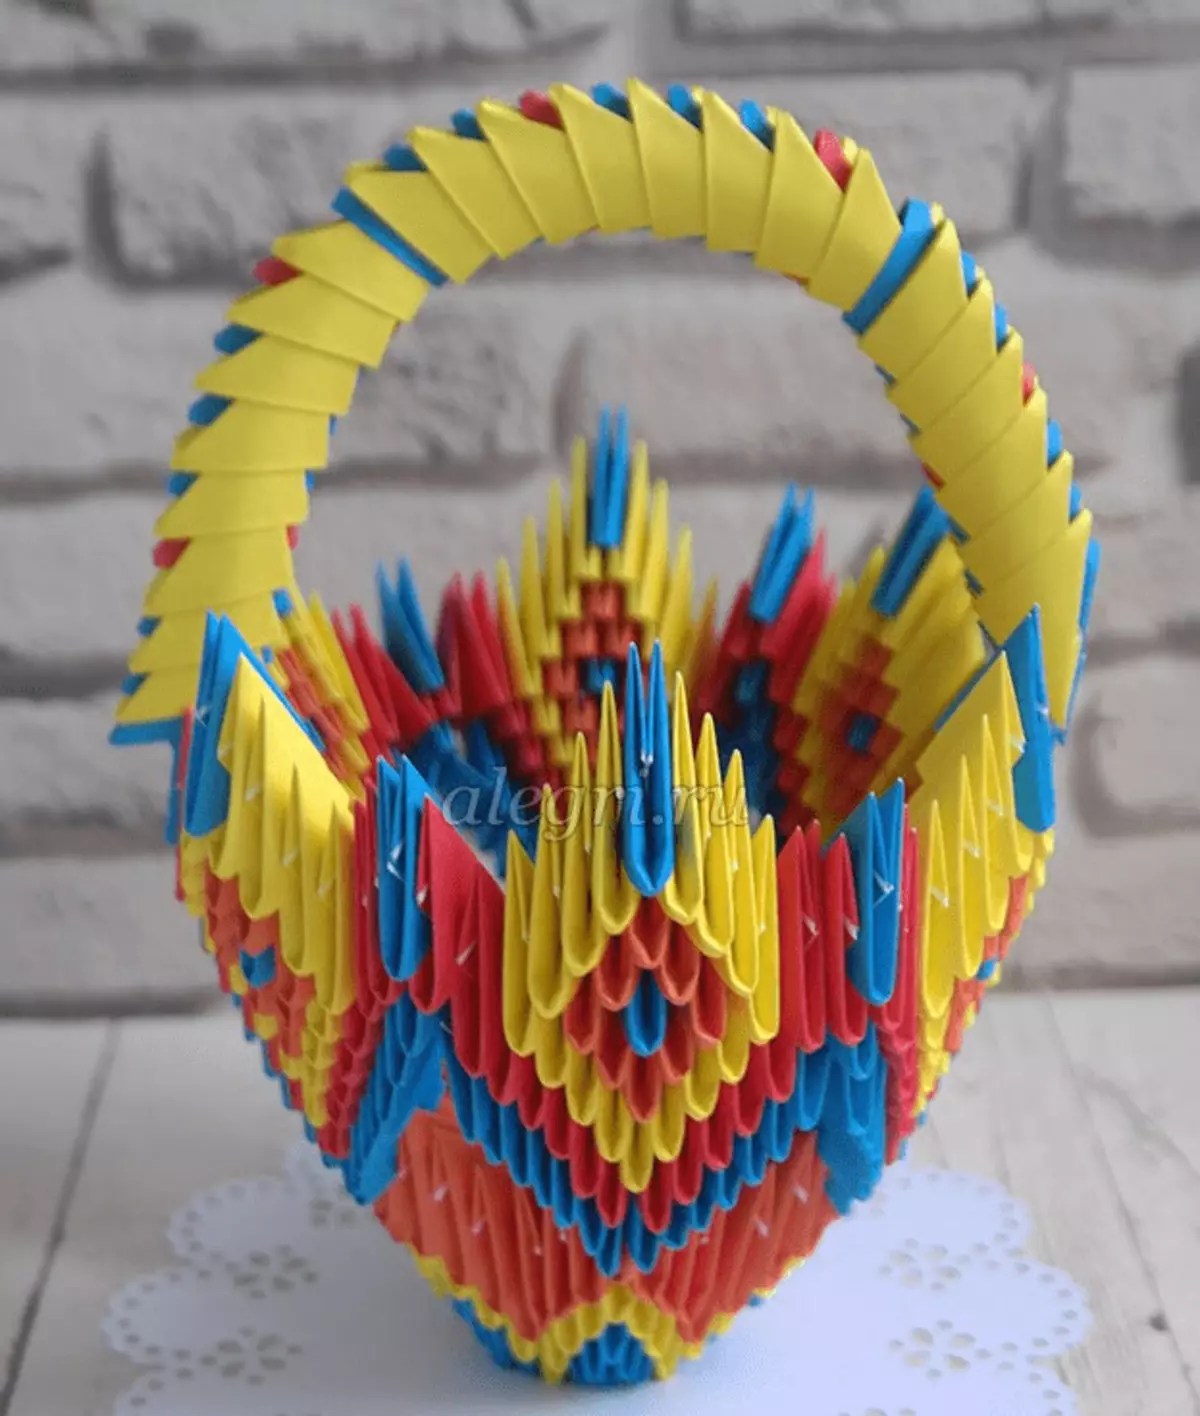 Origami-Basket: Modulárny origami z papiera a jednoduchý košík s vlastnými rukami. Ako urobiť košík podľa schémy detí? 27010_18